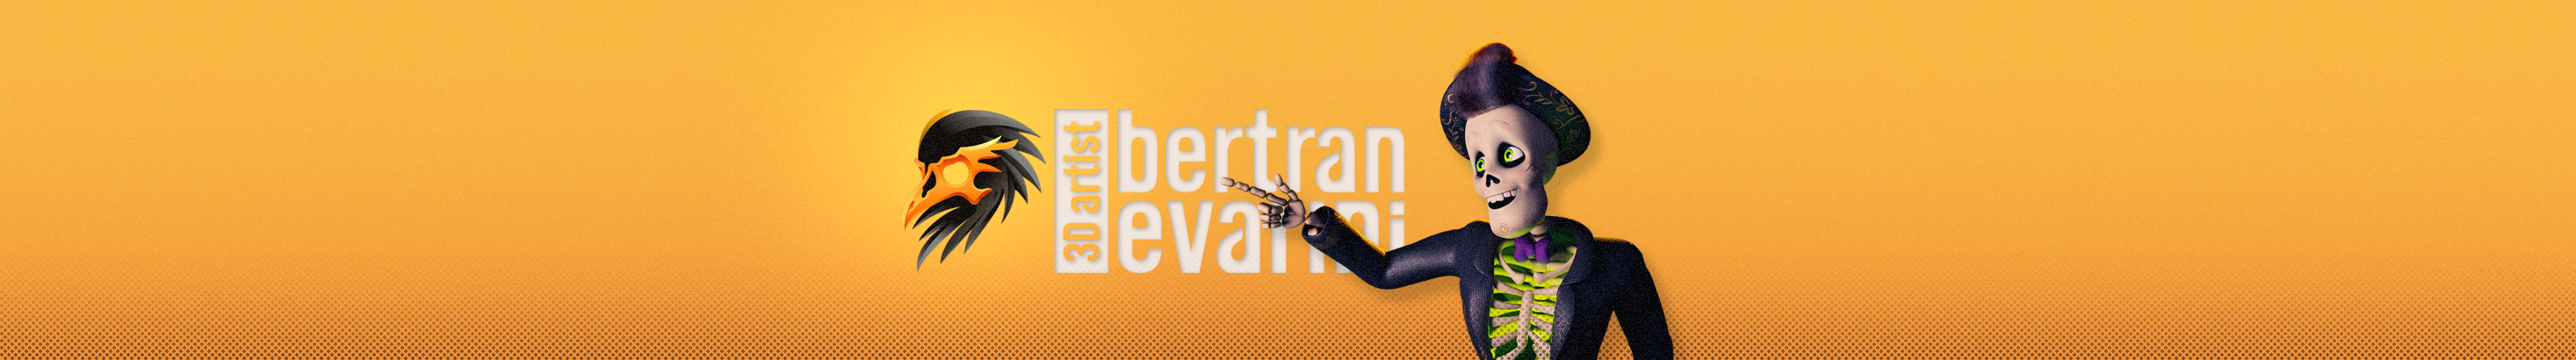 Bertran Evarini's profile banner